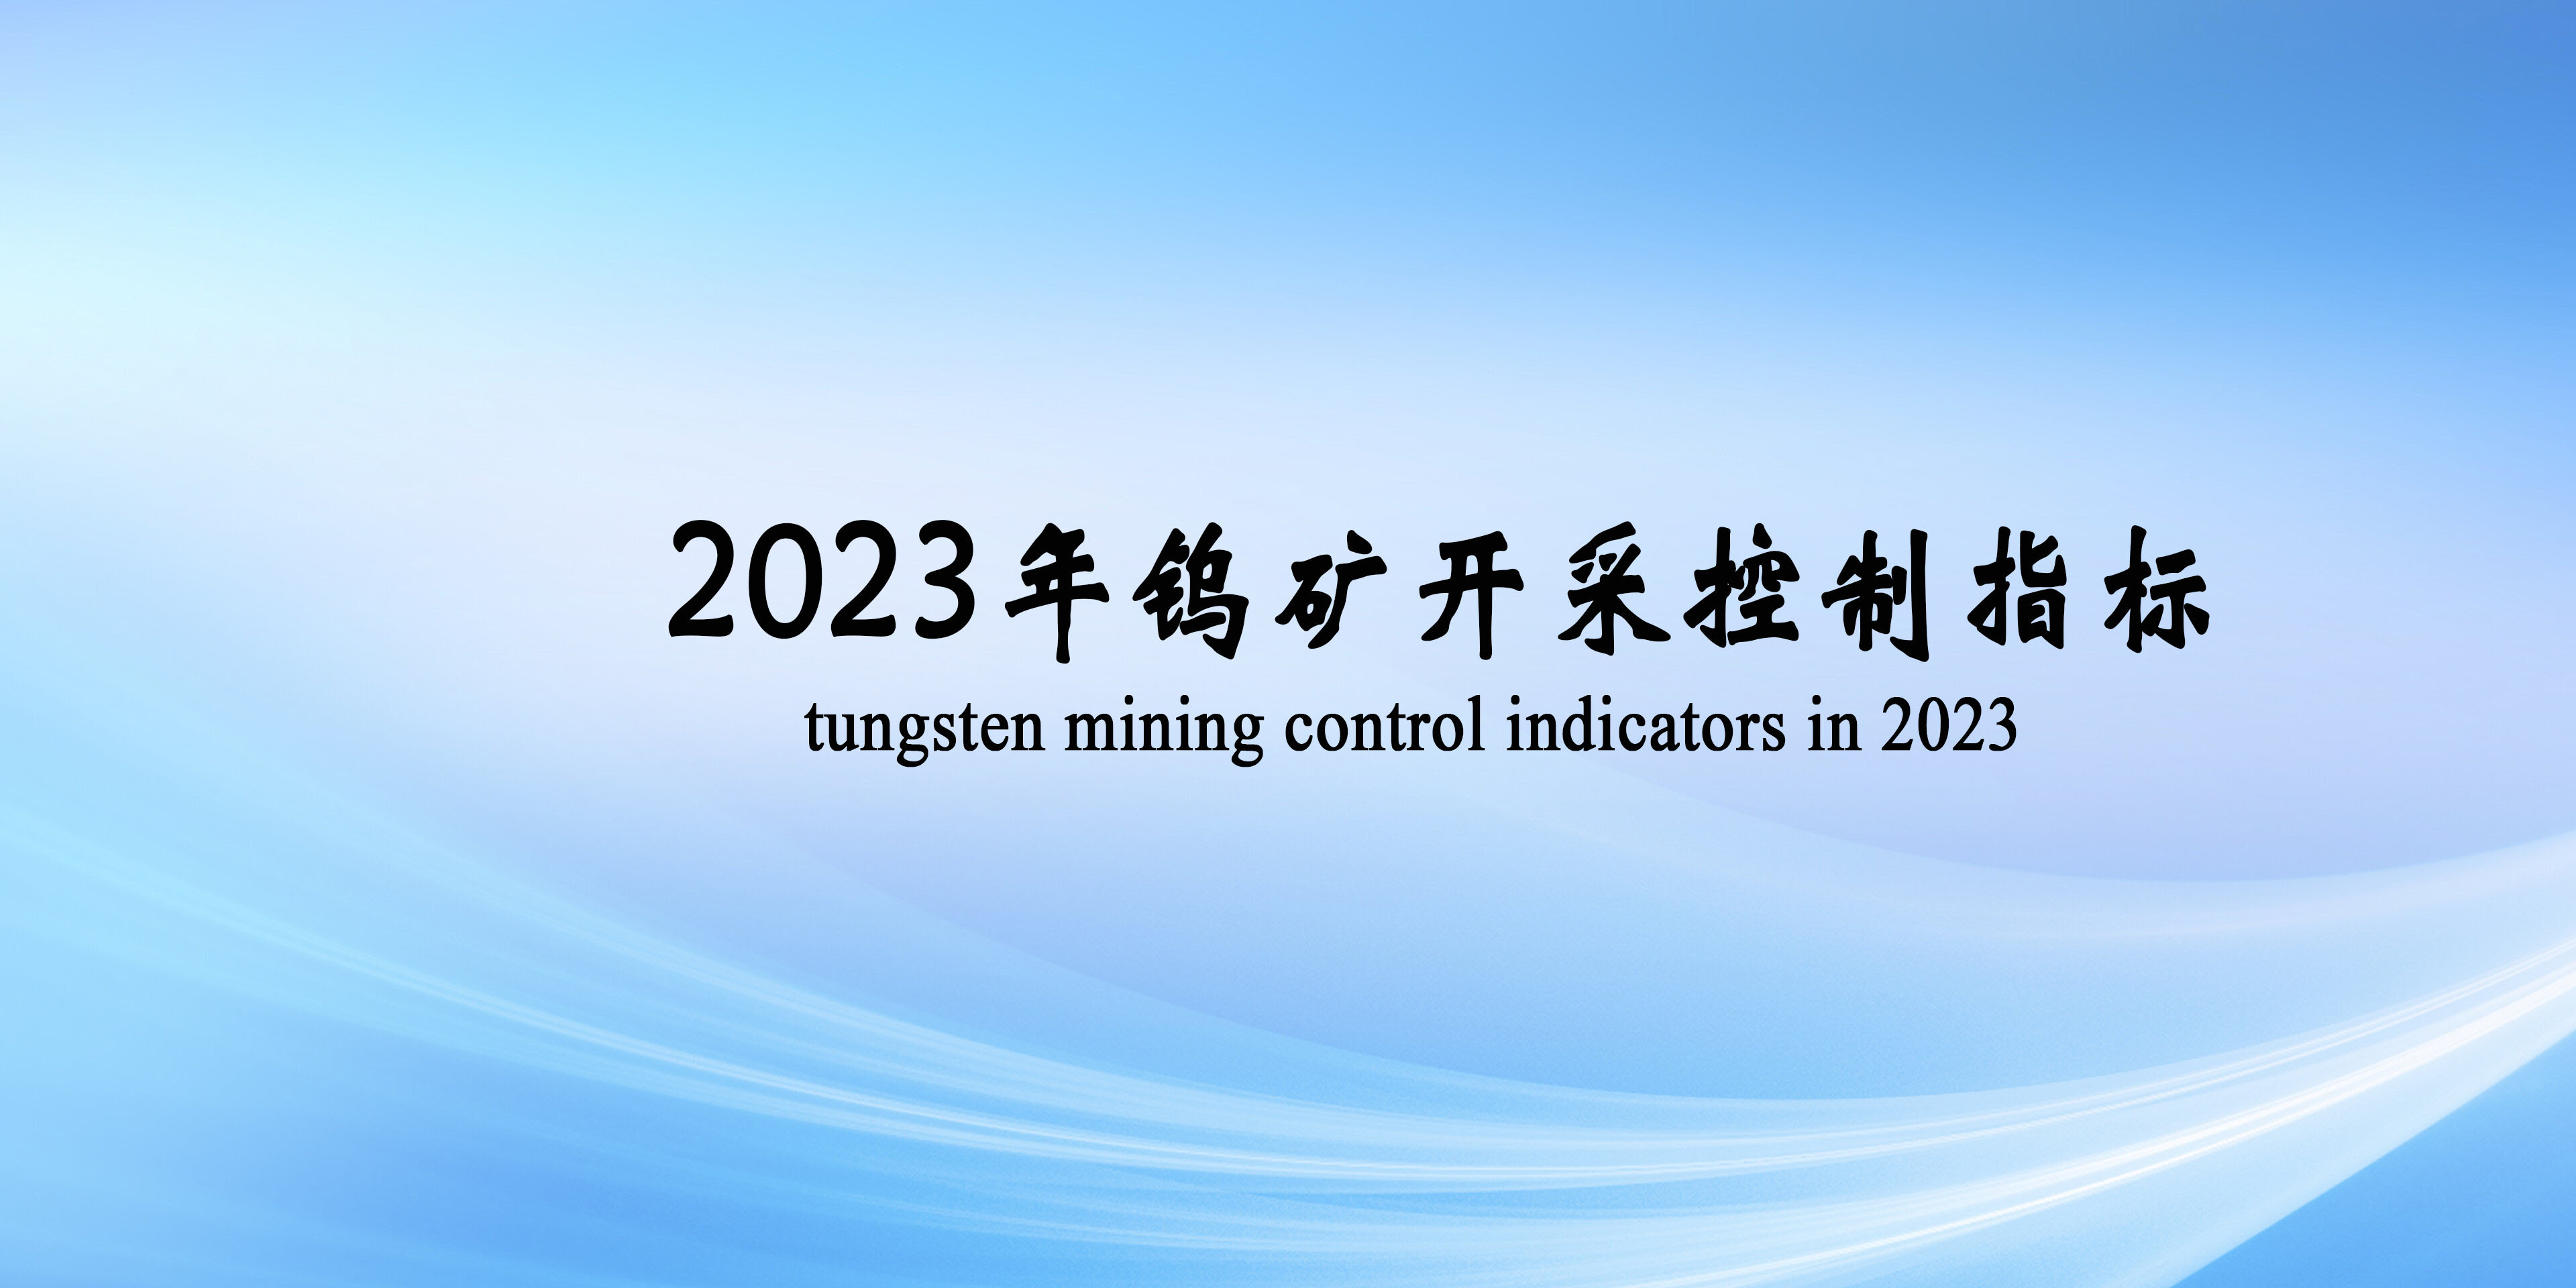 2023年第一批鎢礦開采總量控制指標為63000噸